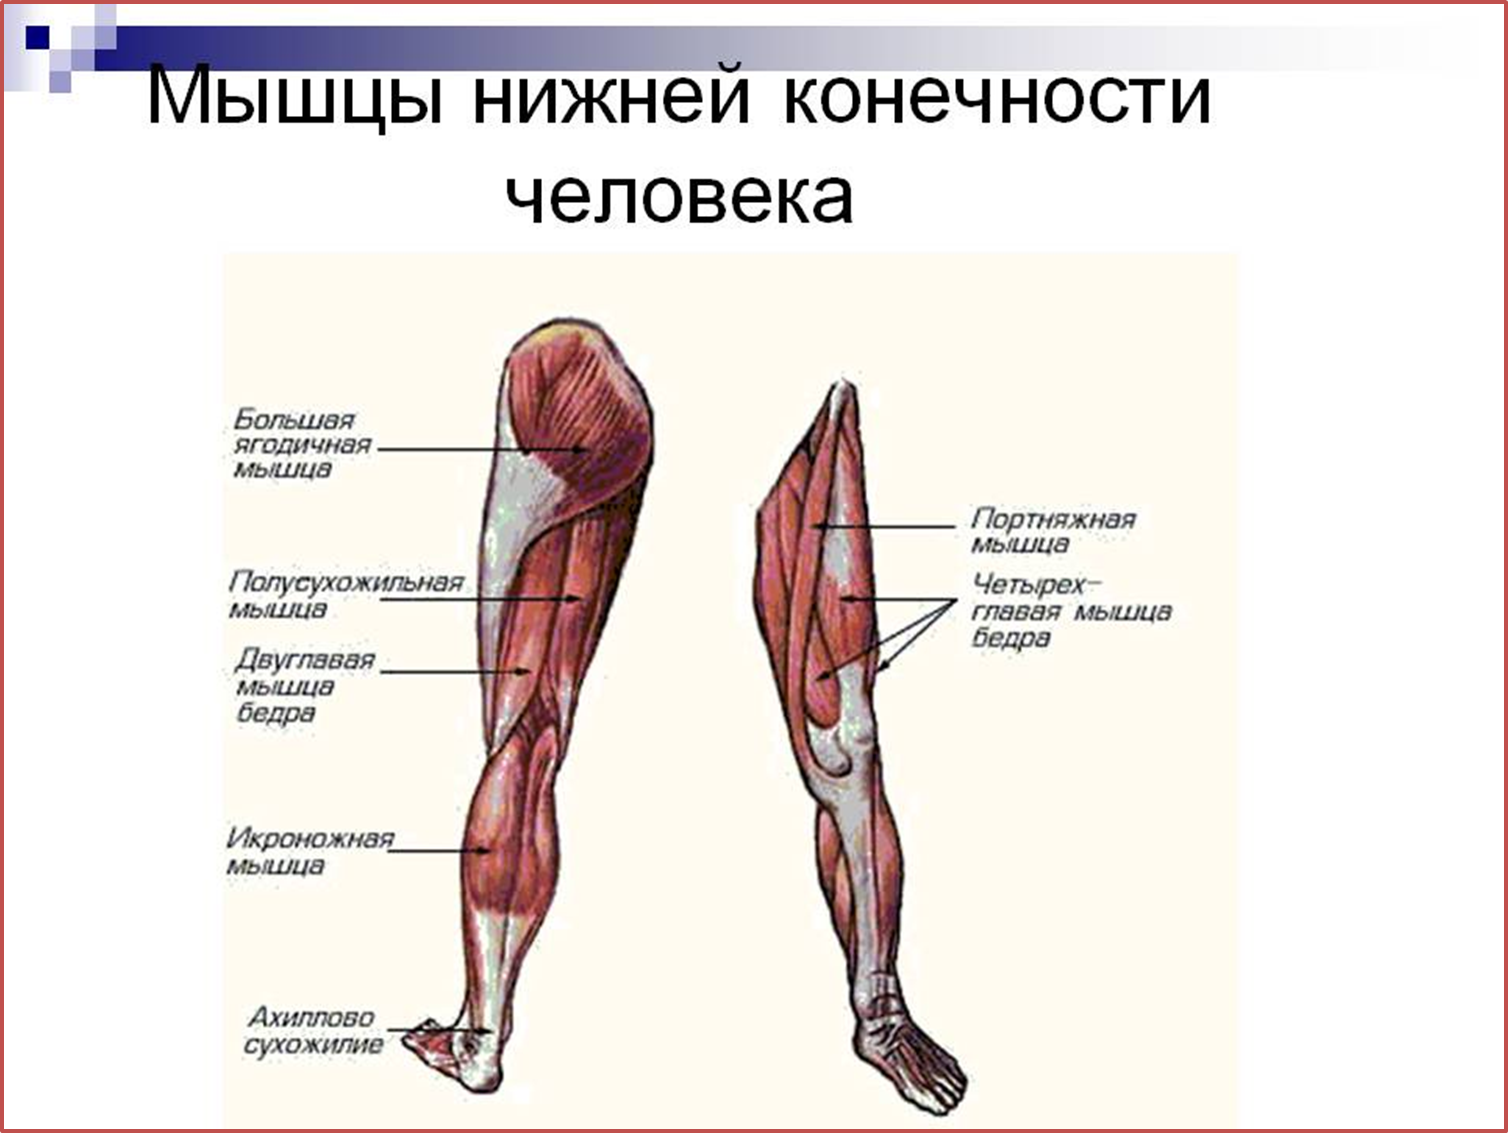 Название мышц костей. Основные мышцы нижних конечностей. Анатомия человека мышцы мышцы нижней конечности.